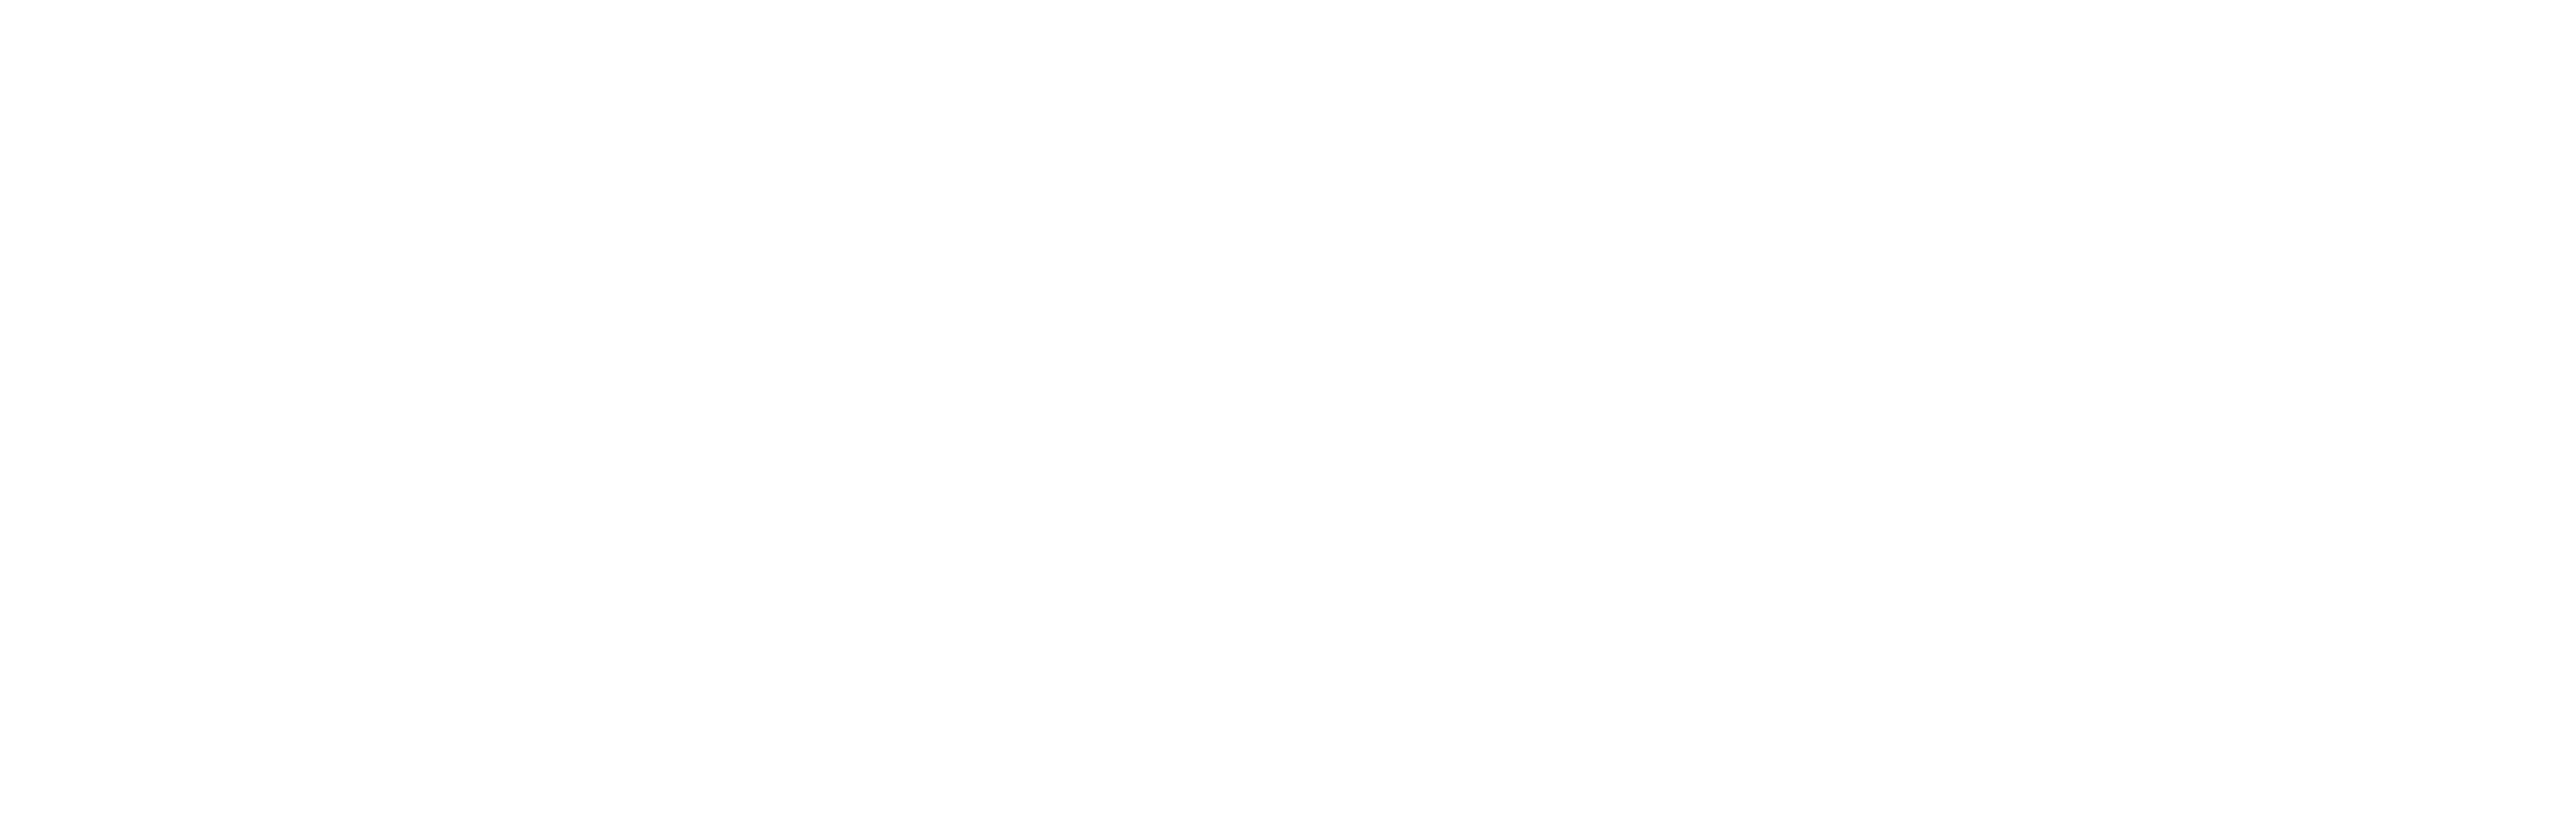 Digital 4 Front